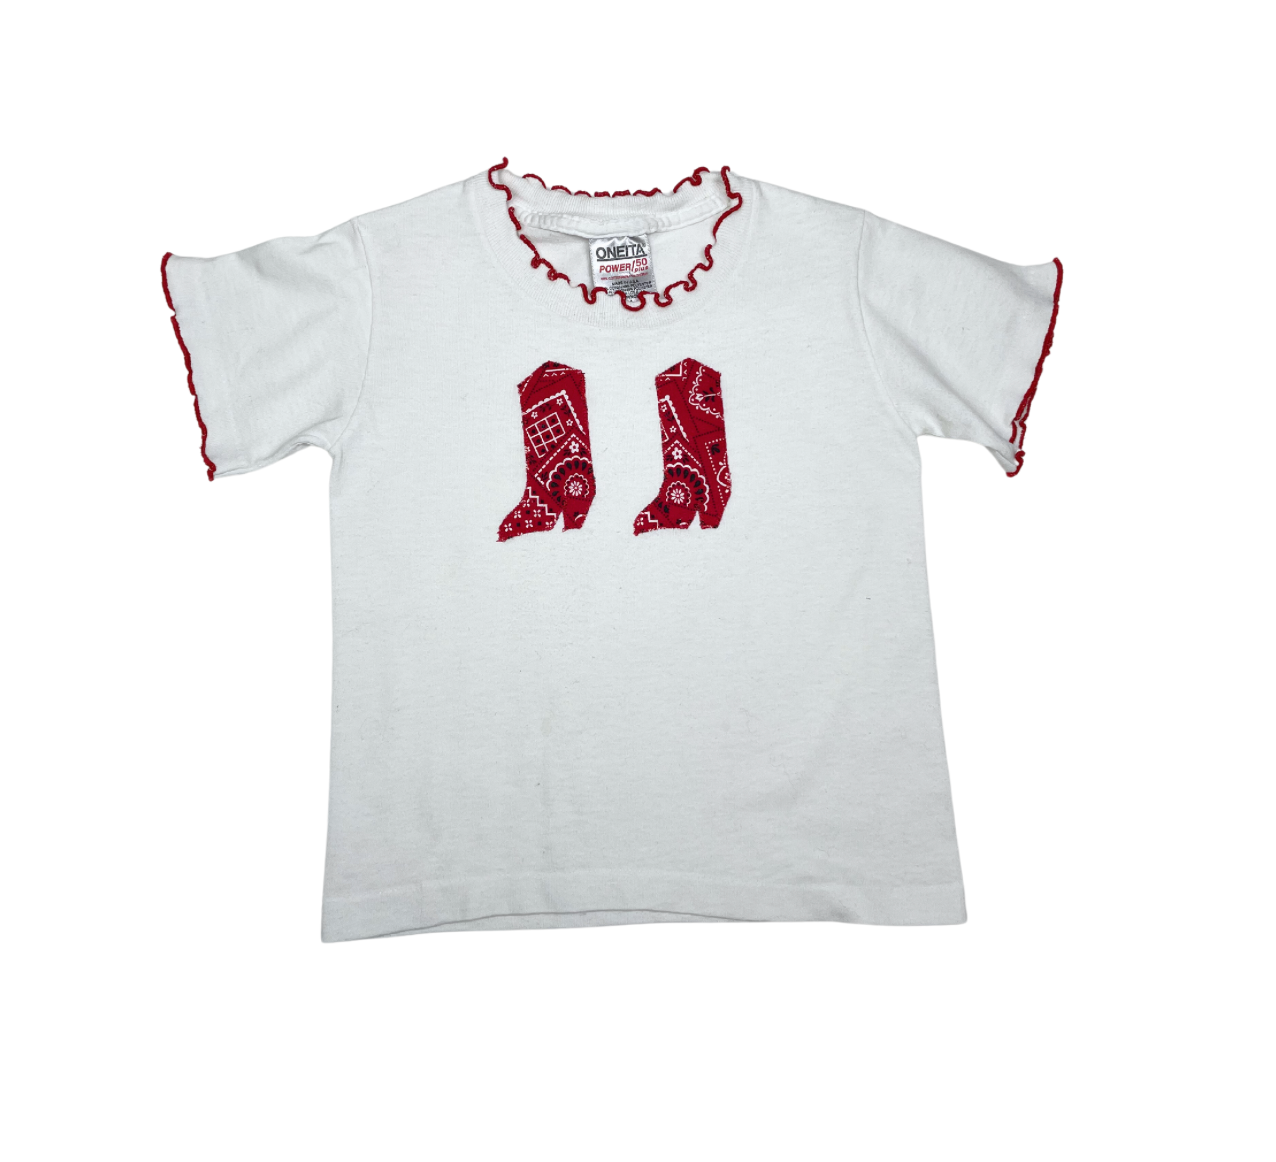 VINTAGE - Ensemble t-shirt et jupe - 2/4 ans